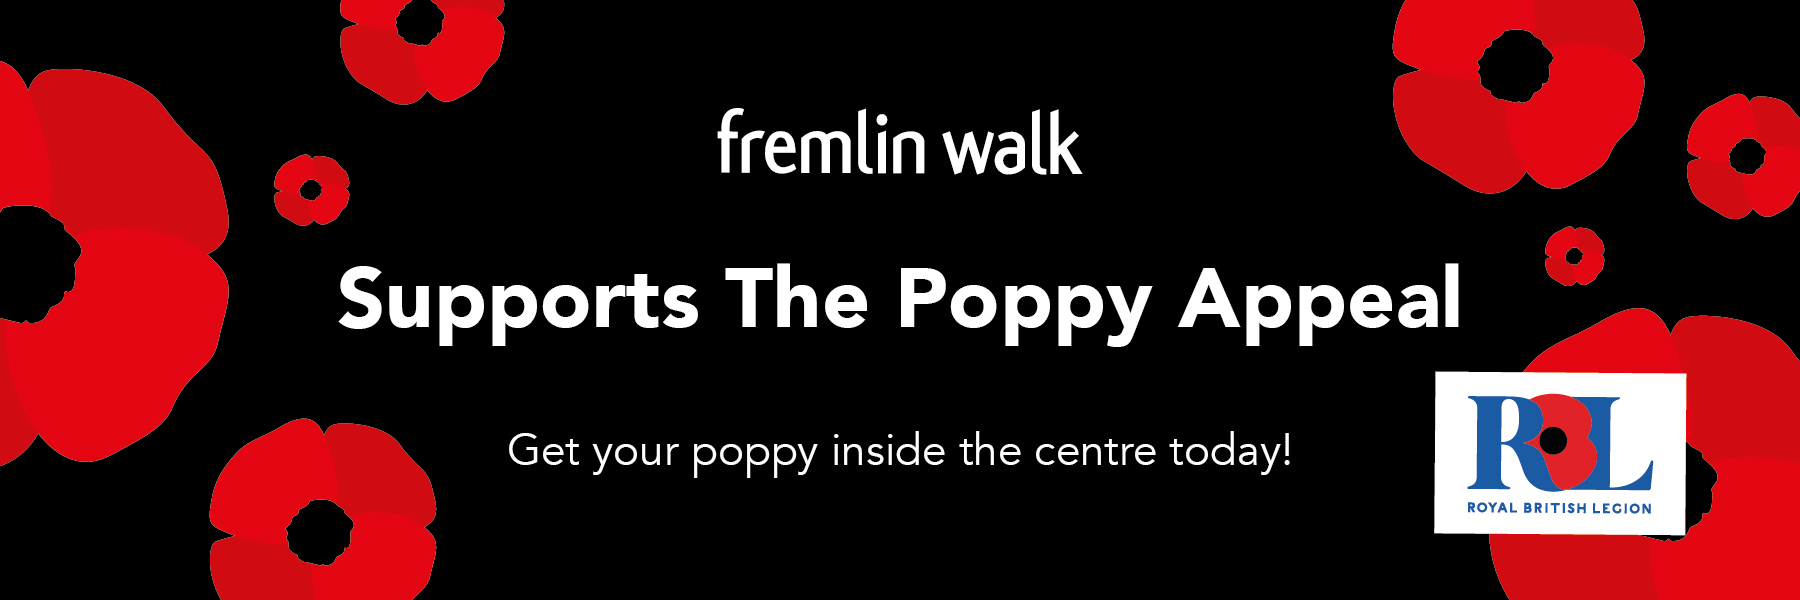 Poppy Appeal